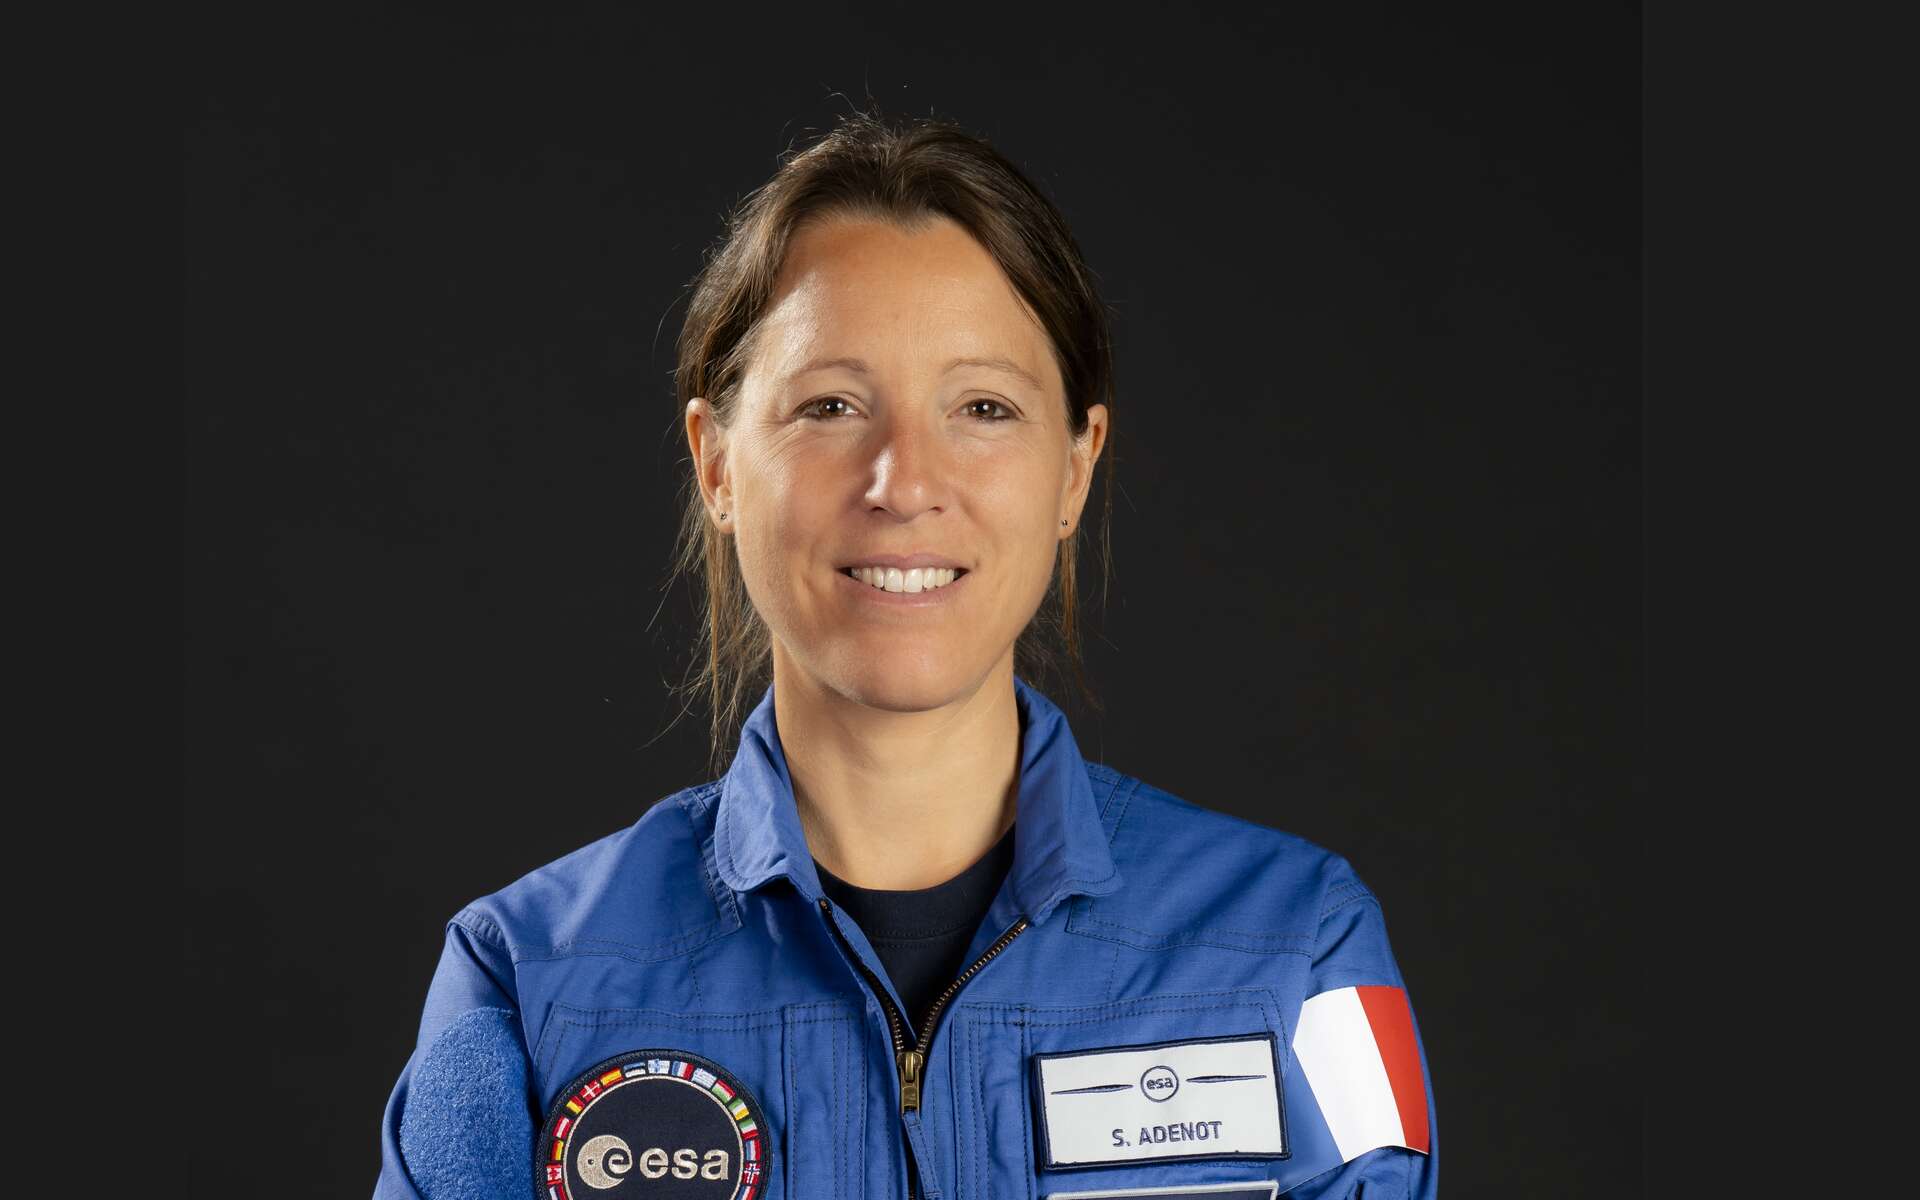 Sophie Adenot reçoit officiellement ses « ailes » et va pouvoir voler dans l'espace d'ici 2030